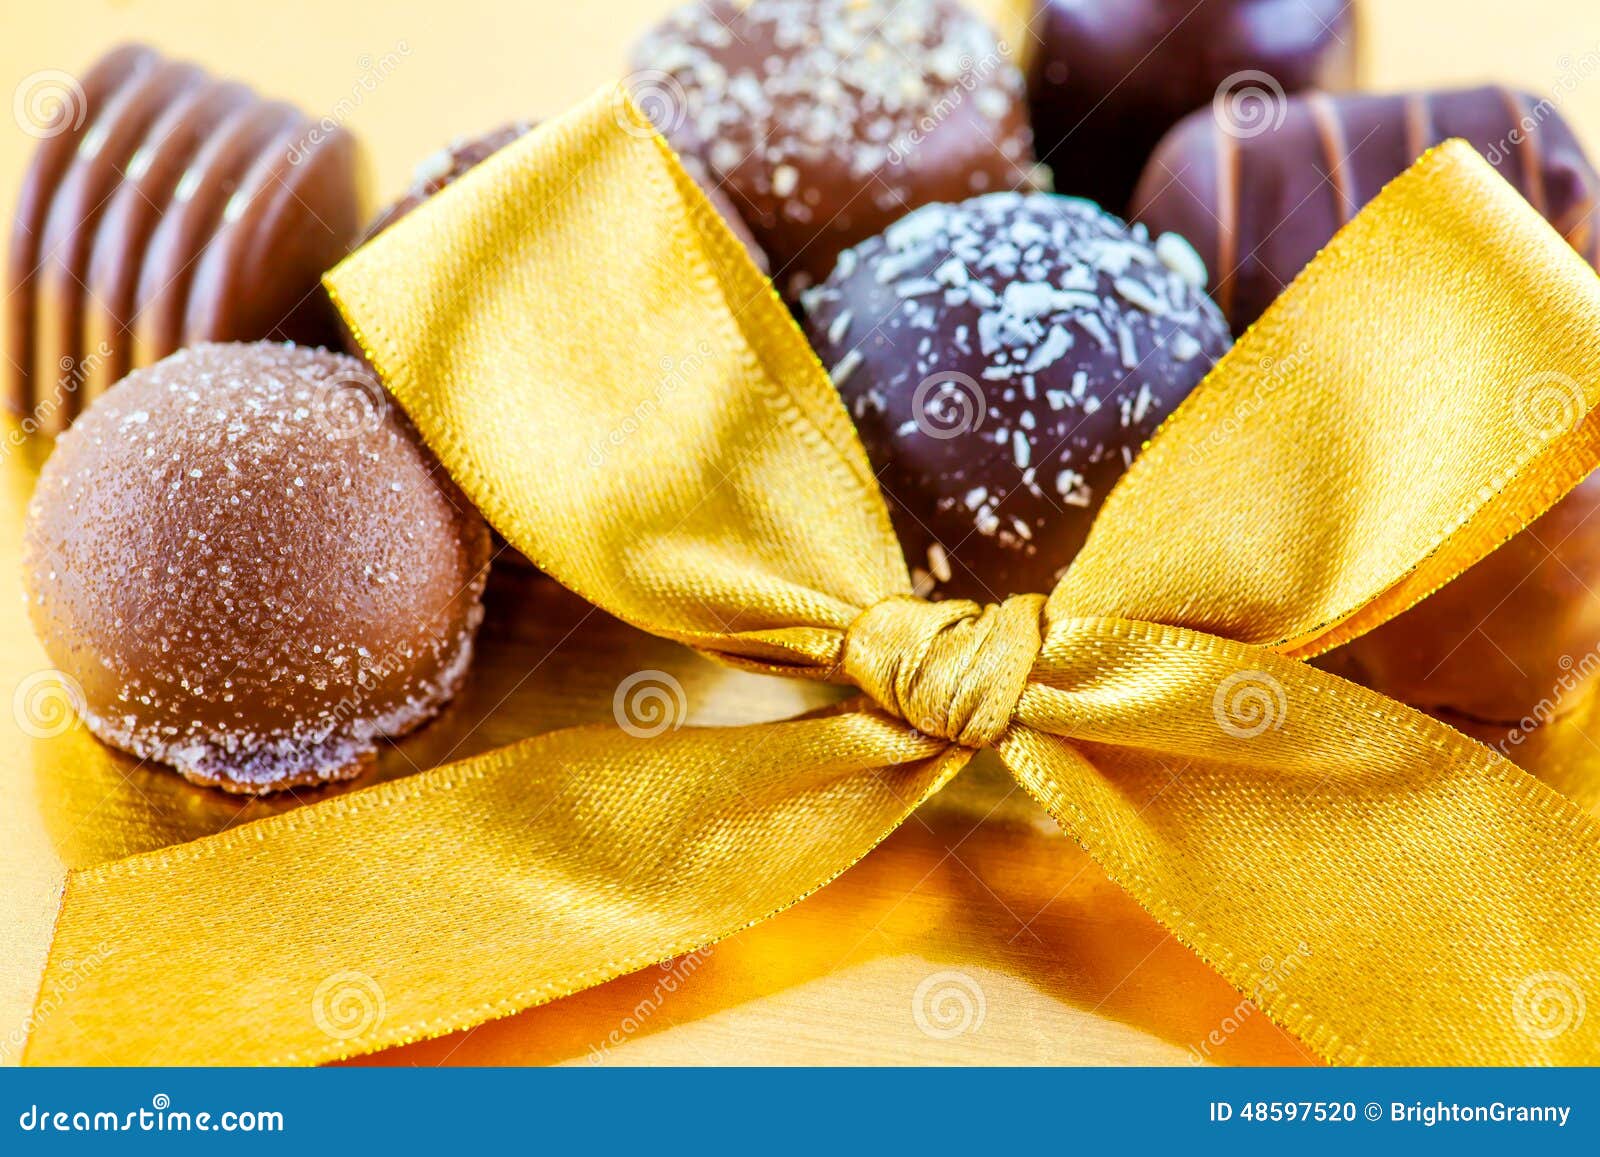 Chocolat de luxe photo stock. Image du délicieux, dessert - 48597520